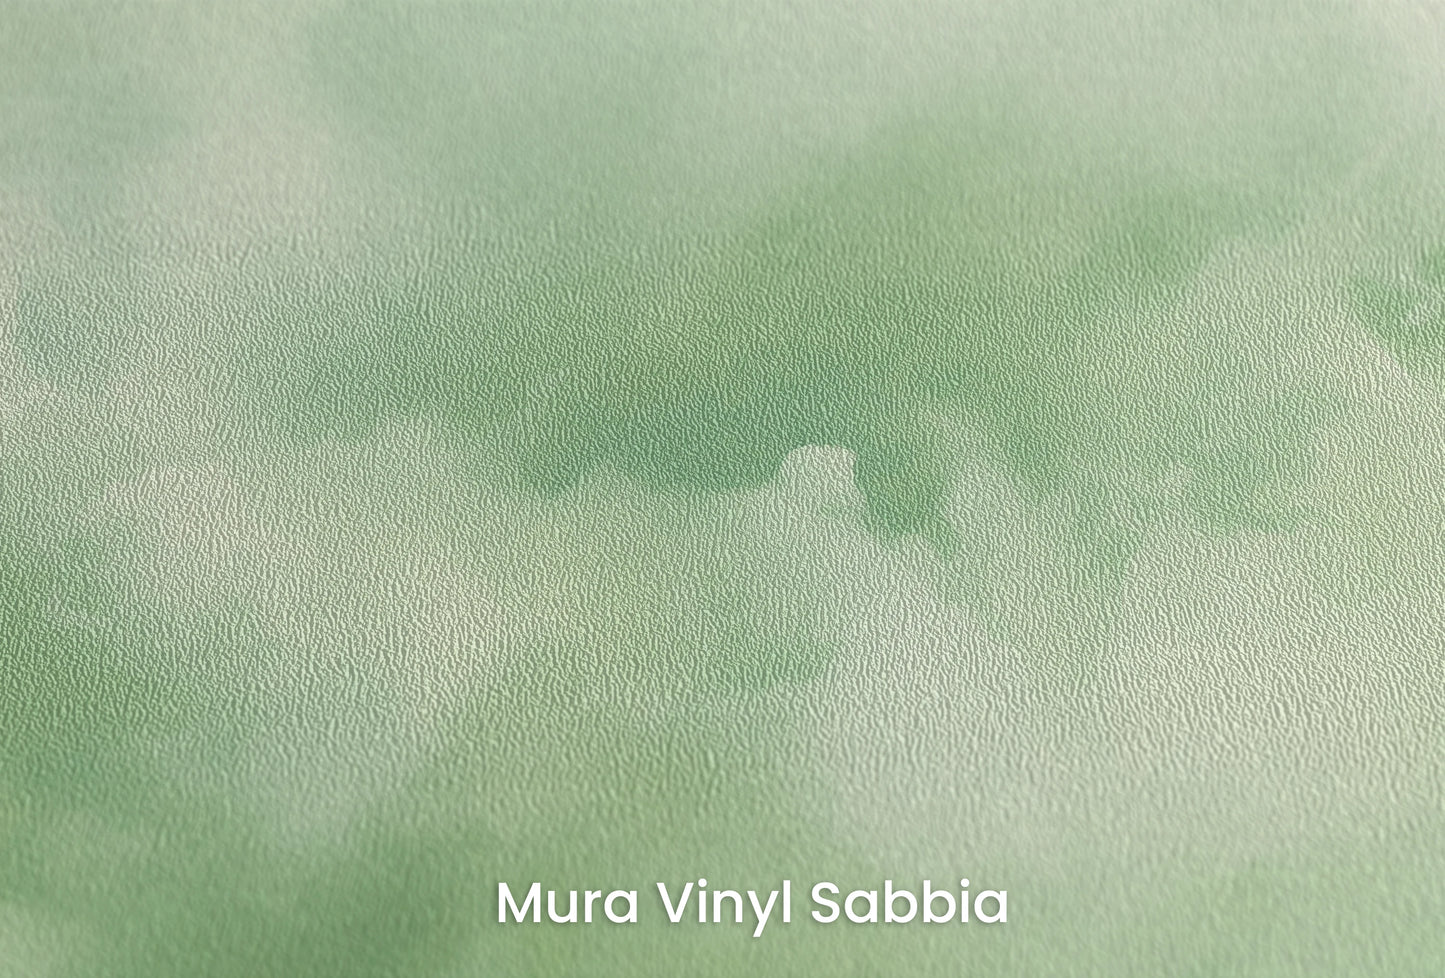 Zbliżenie na artystyczną fototapetę o nazwie Mint Serenity na podłożu Mura Vinyl Sabbia struktura grubego ziarna piasku.